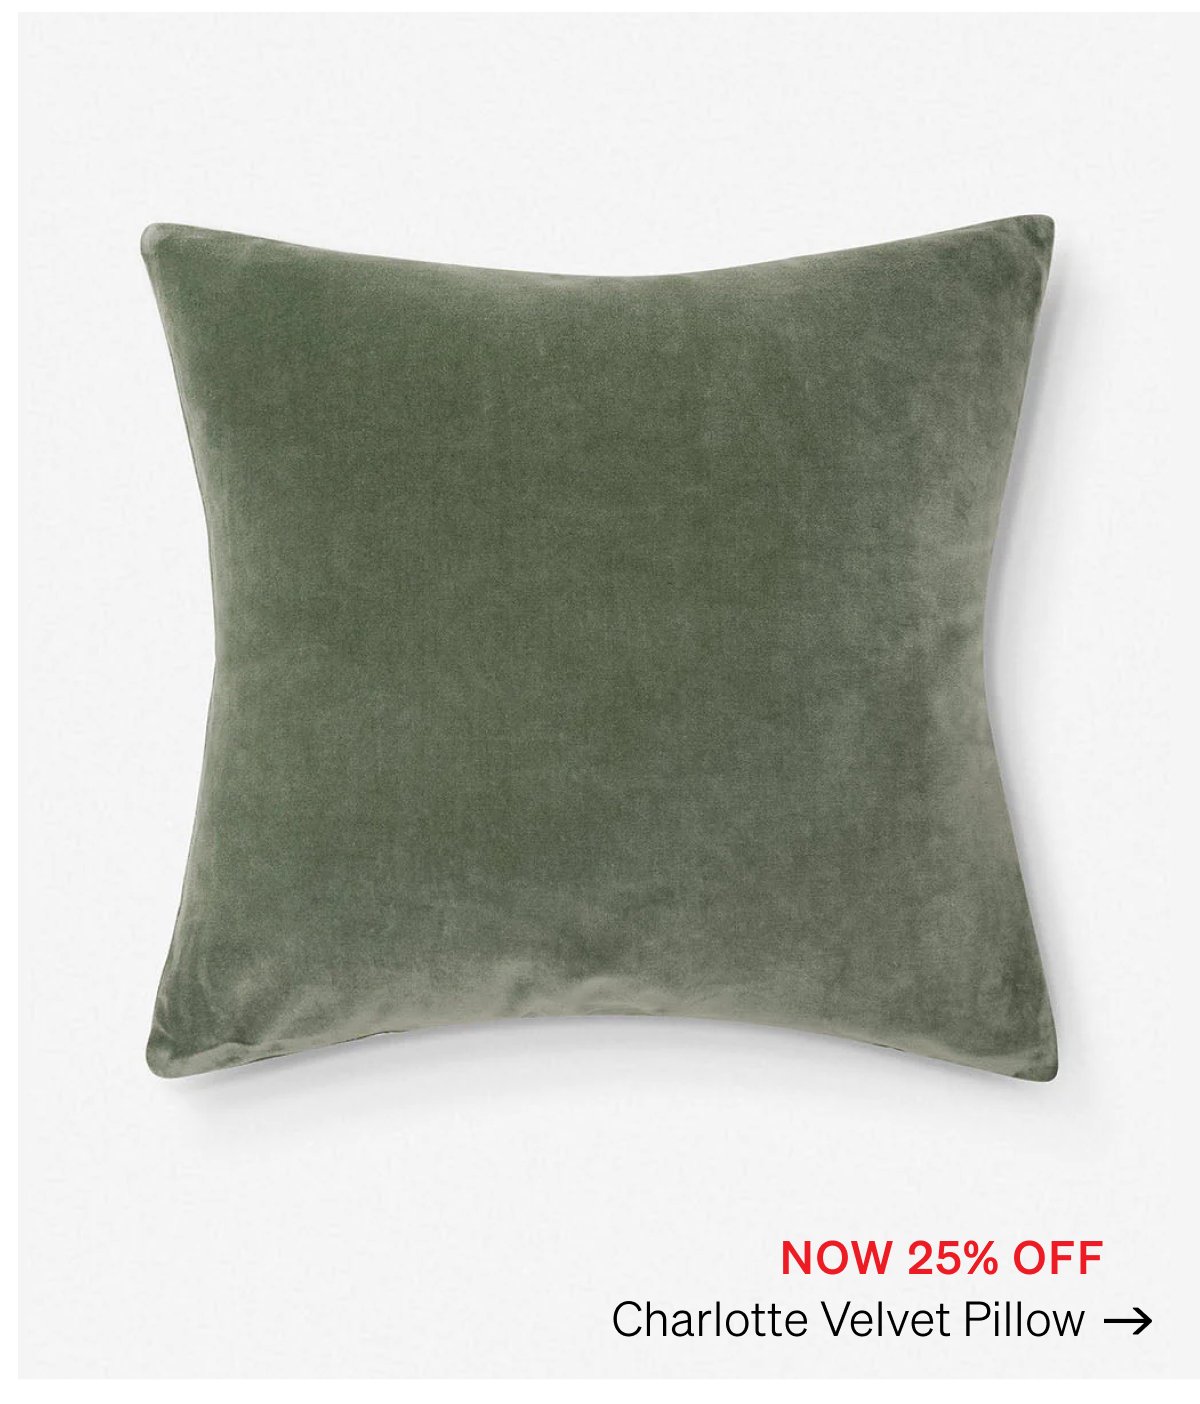 Shop Charlotte Velvet Pillow